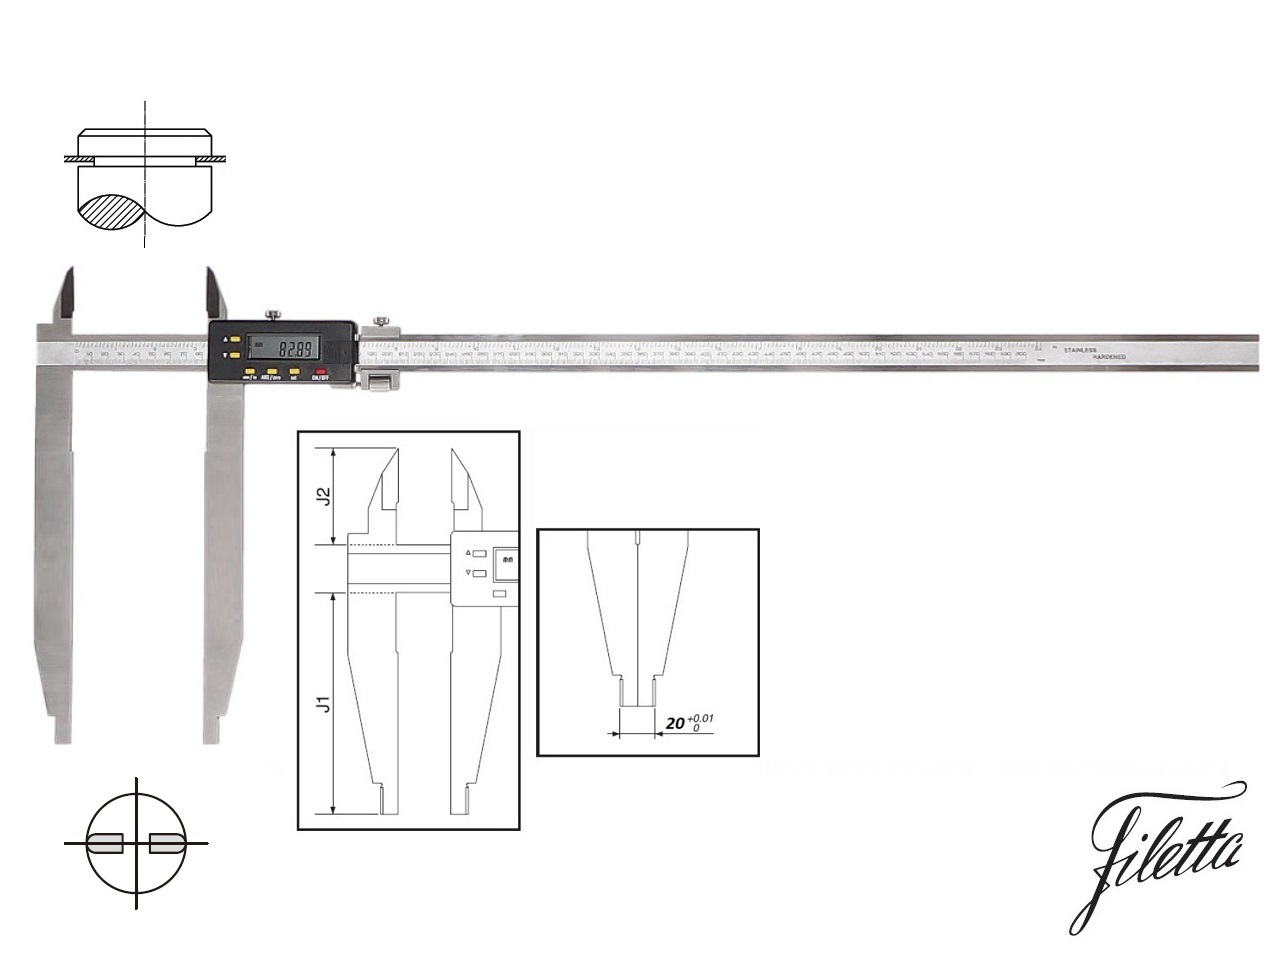 Digitální posuvné měřítko Filetta 0-500/200 mm s měřicími nožíky pro vnější měření